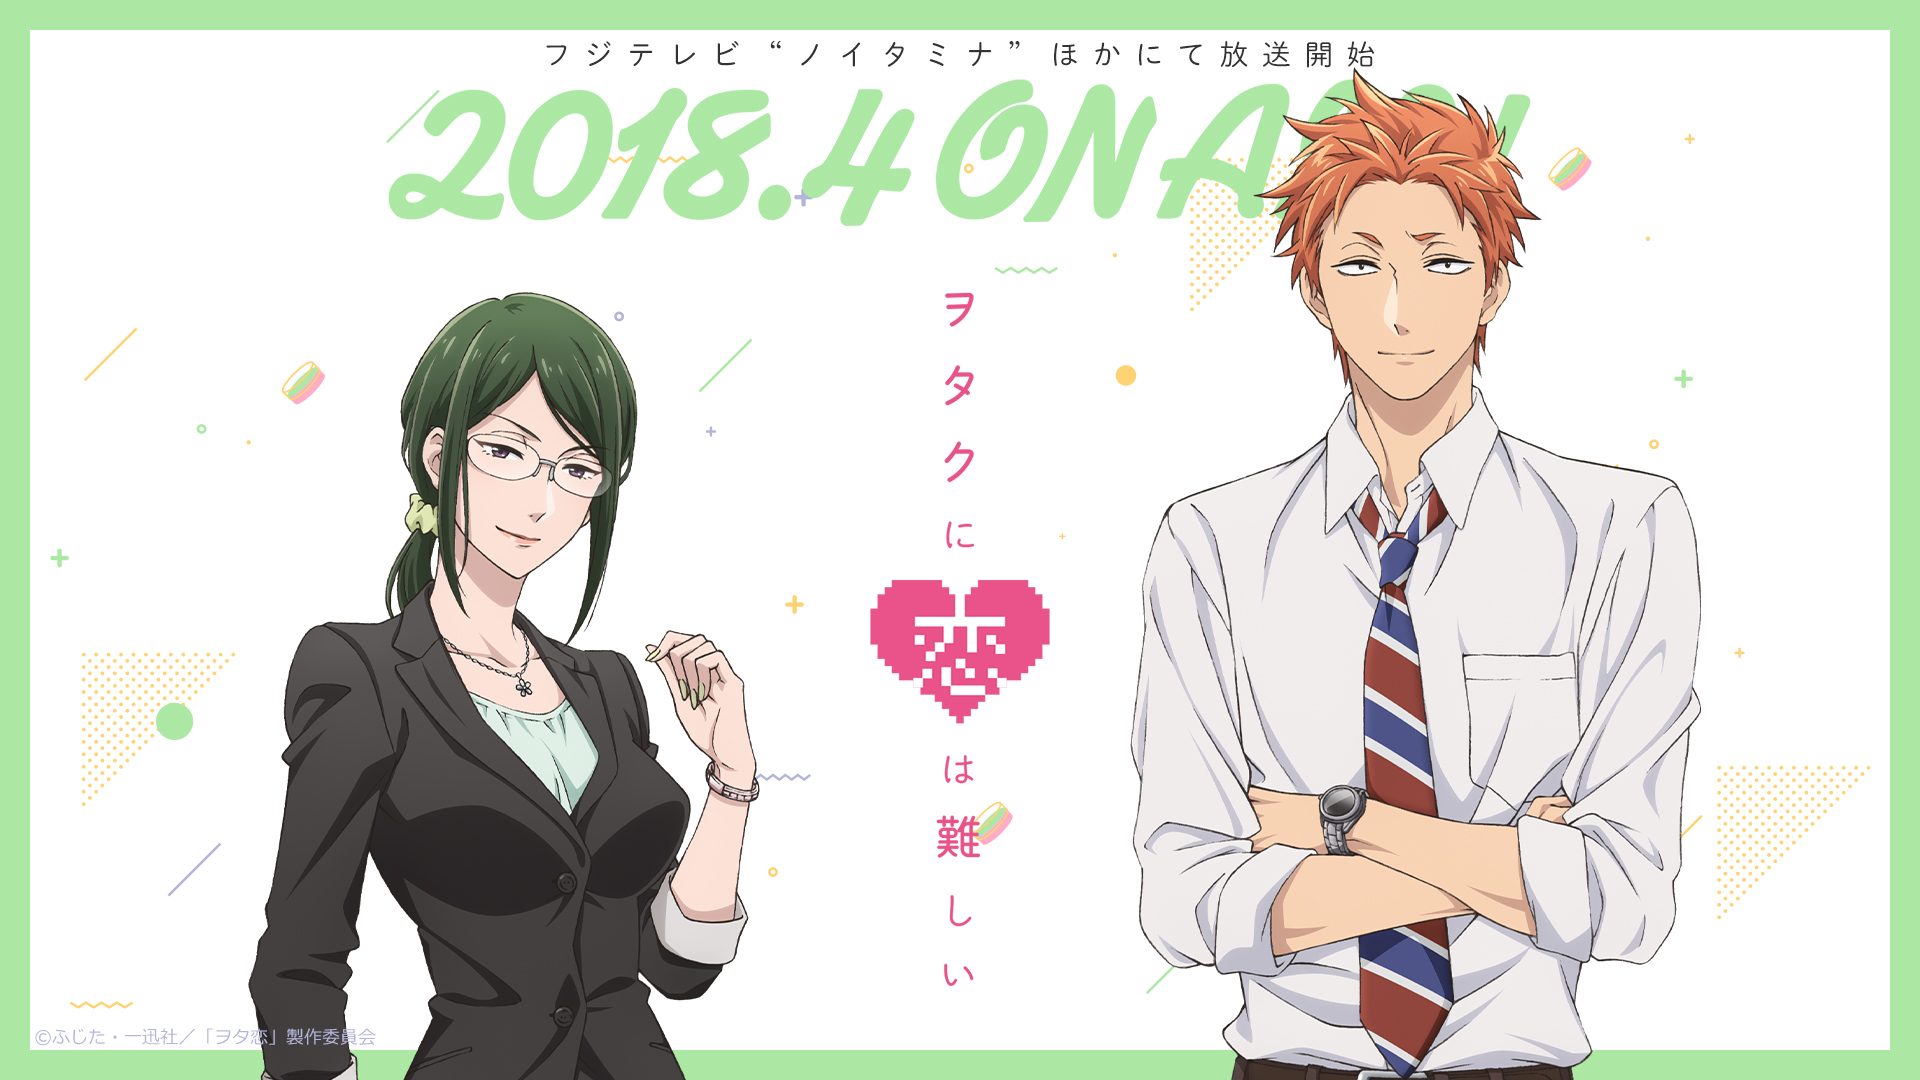 Anime Wotaku ni Koi wa Muzukashii HD Wallpaper | Background Image